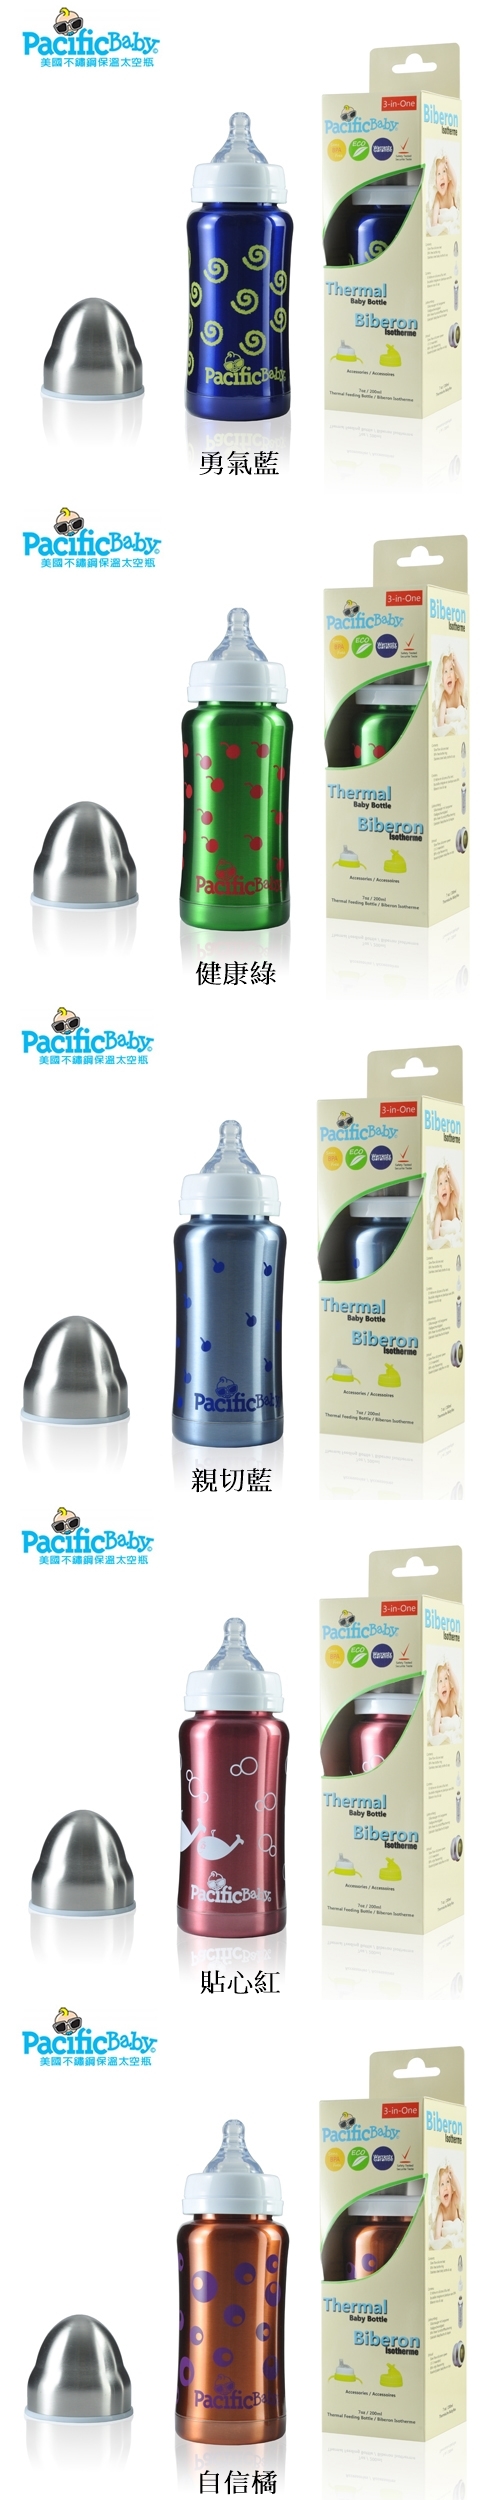 逗寶-Pacific Baby美國不鏽鋼保鮮太空瓶7oz(200ML)